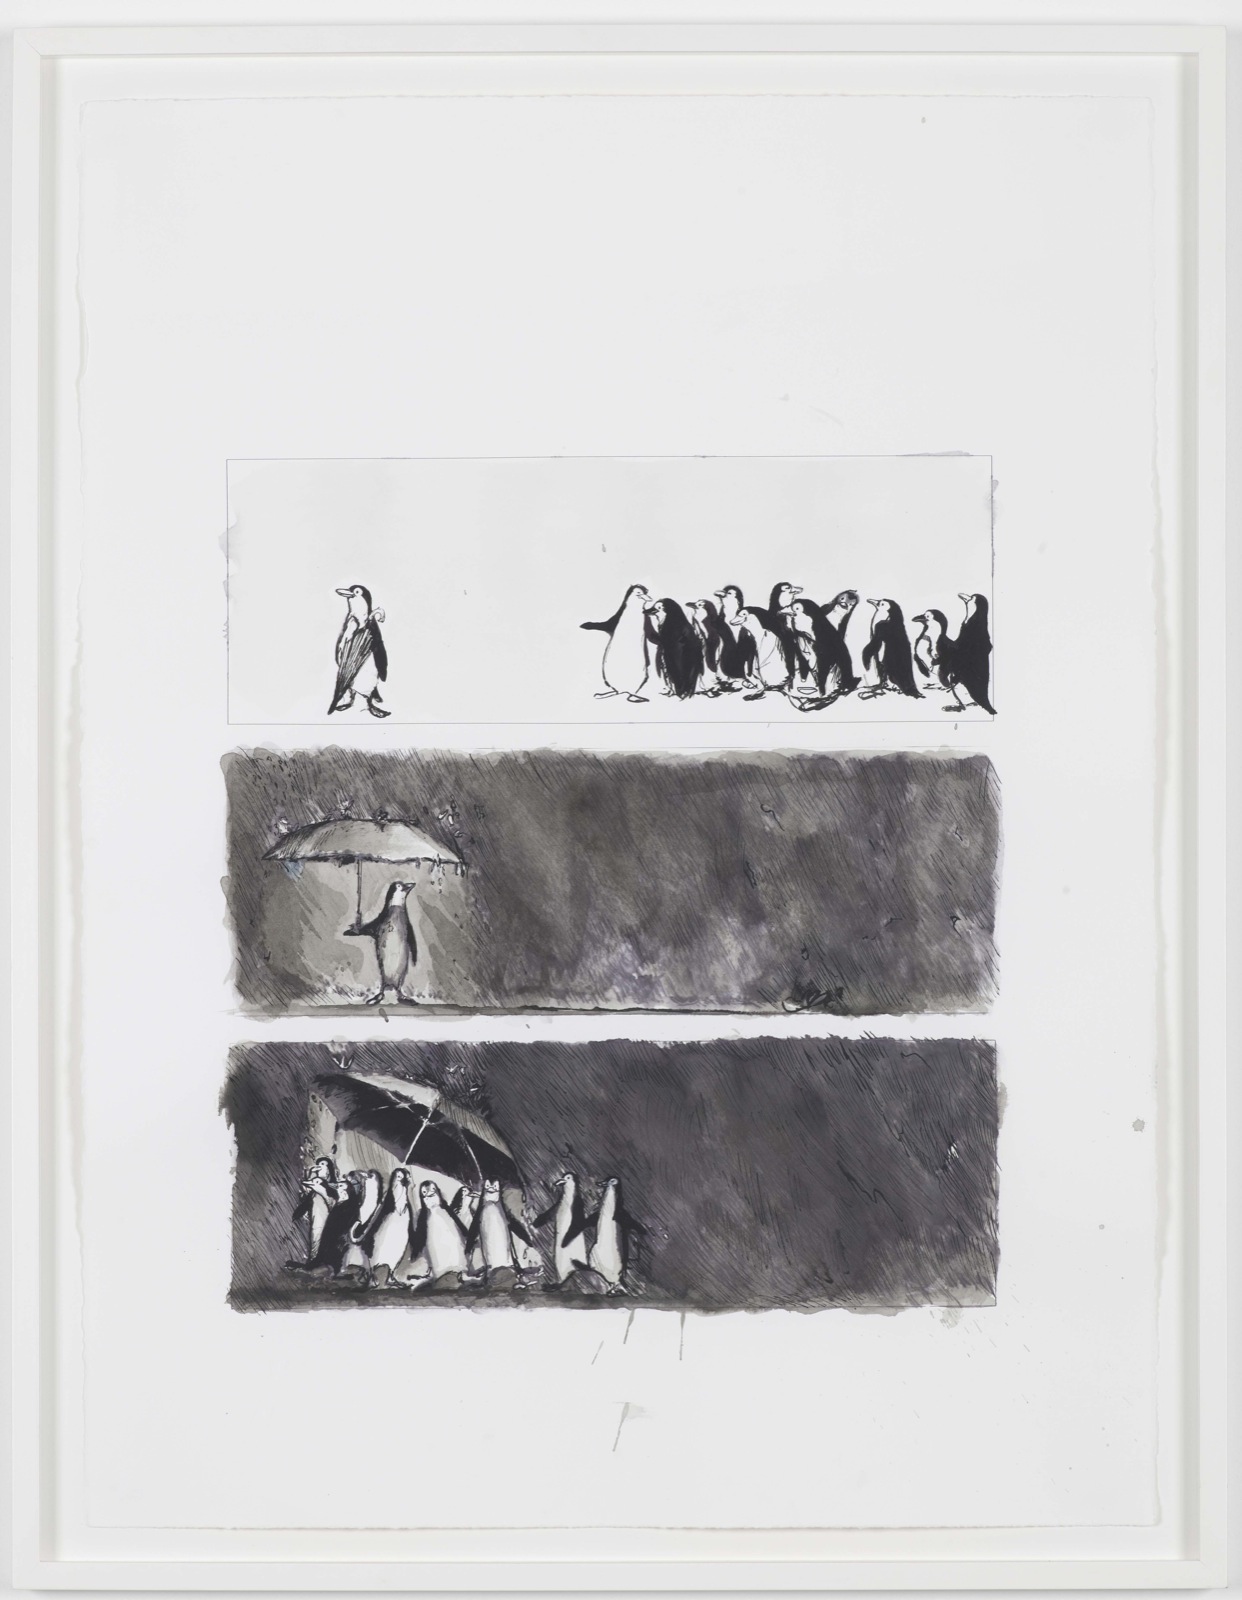 Philippe Parreno, Sono Uguali e Sono Divers, 2009, ink on paper, 76 x 57 cm